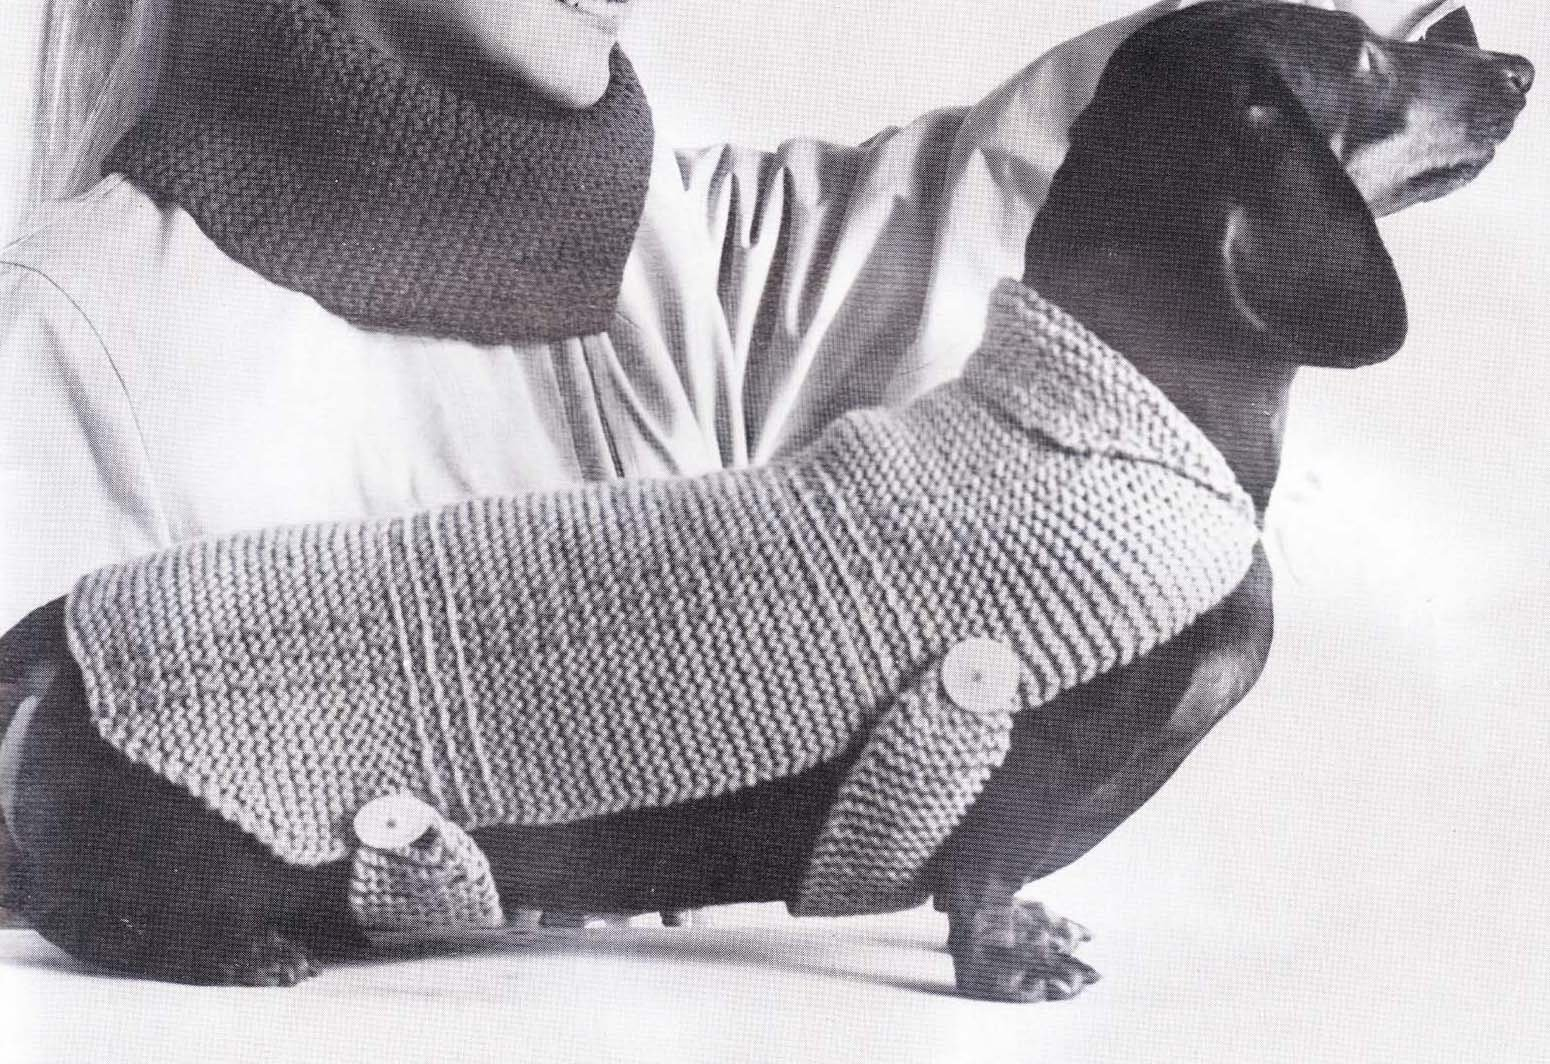 Easy Knitting Pattern For Dog Coat Easy Crochet Dog Sweater Pattern Crochet And Knitting Patterns